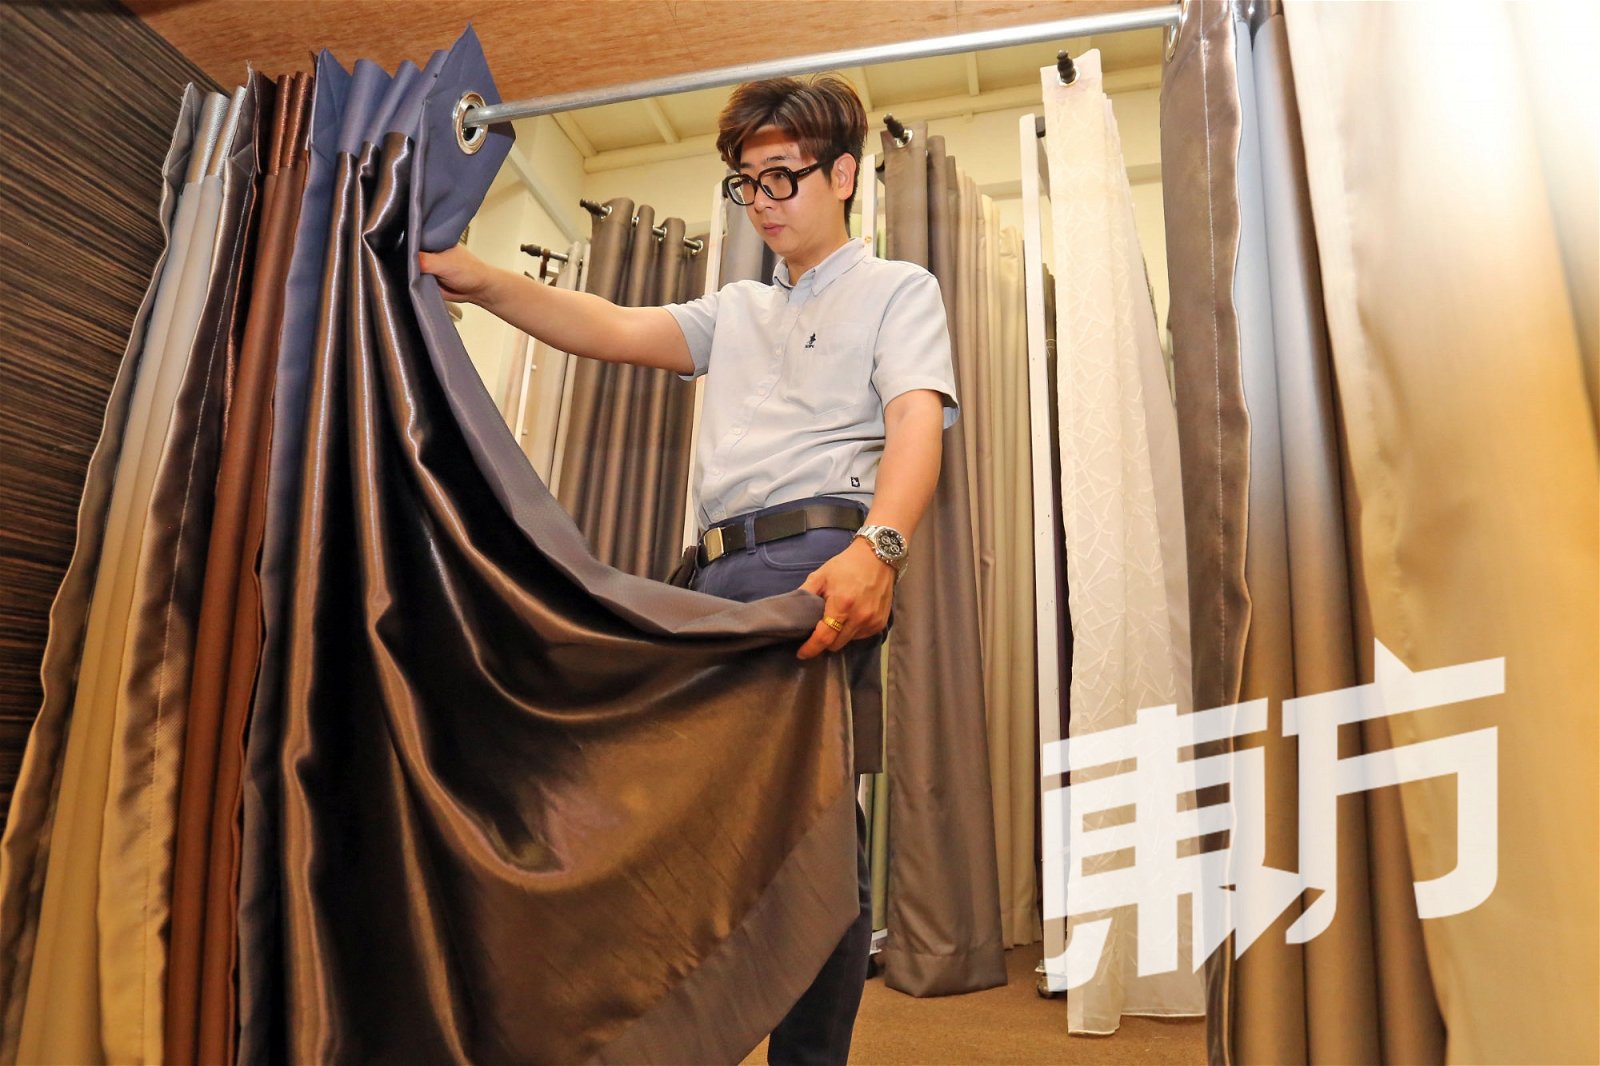 连德源对于窗帘的布料品质非常讲究。他说，其经营理念就是打造独一无二的一站式产品及服务品牌。